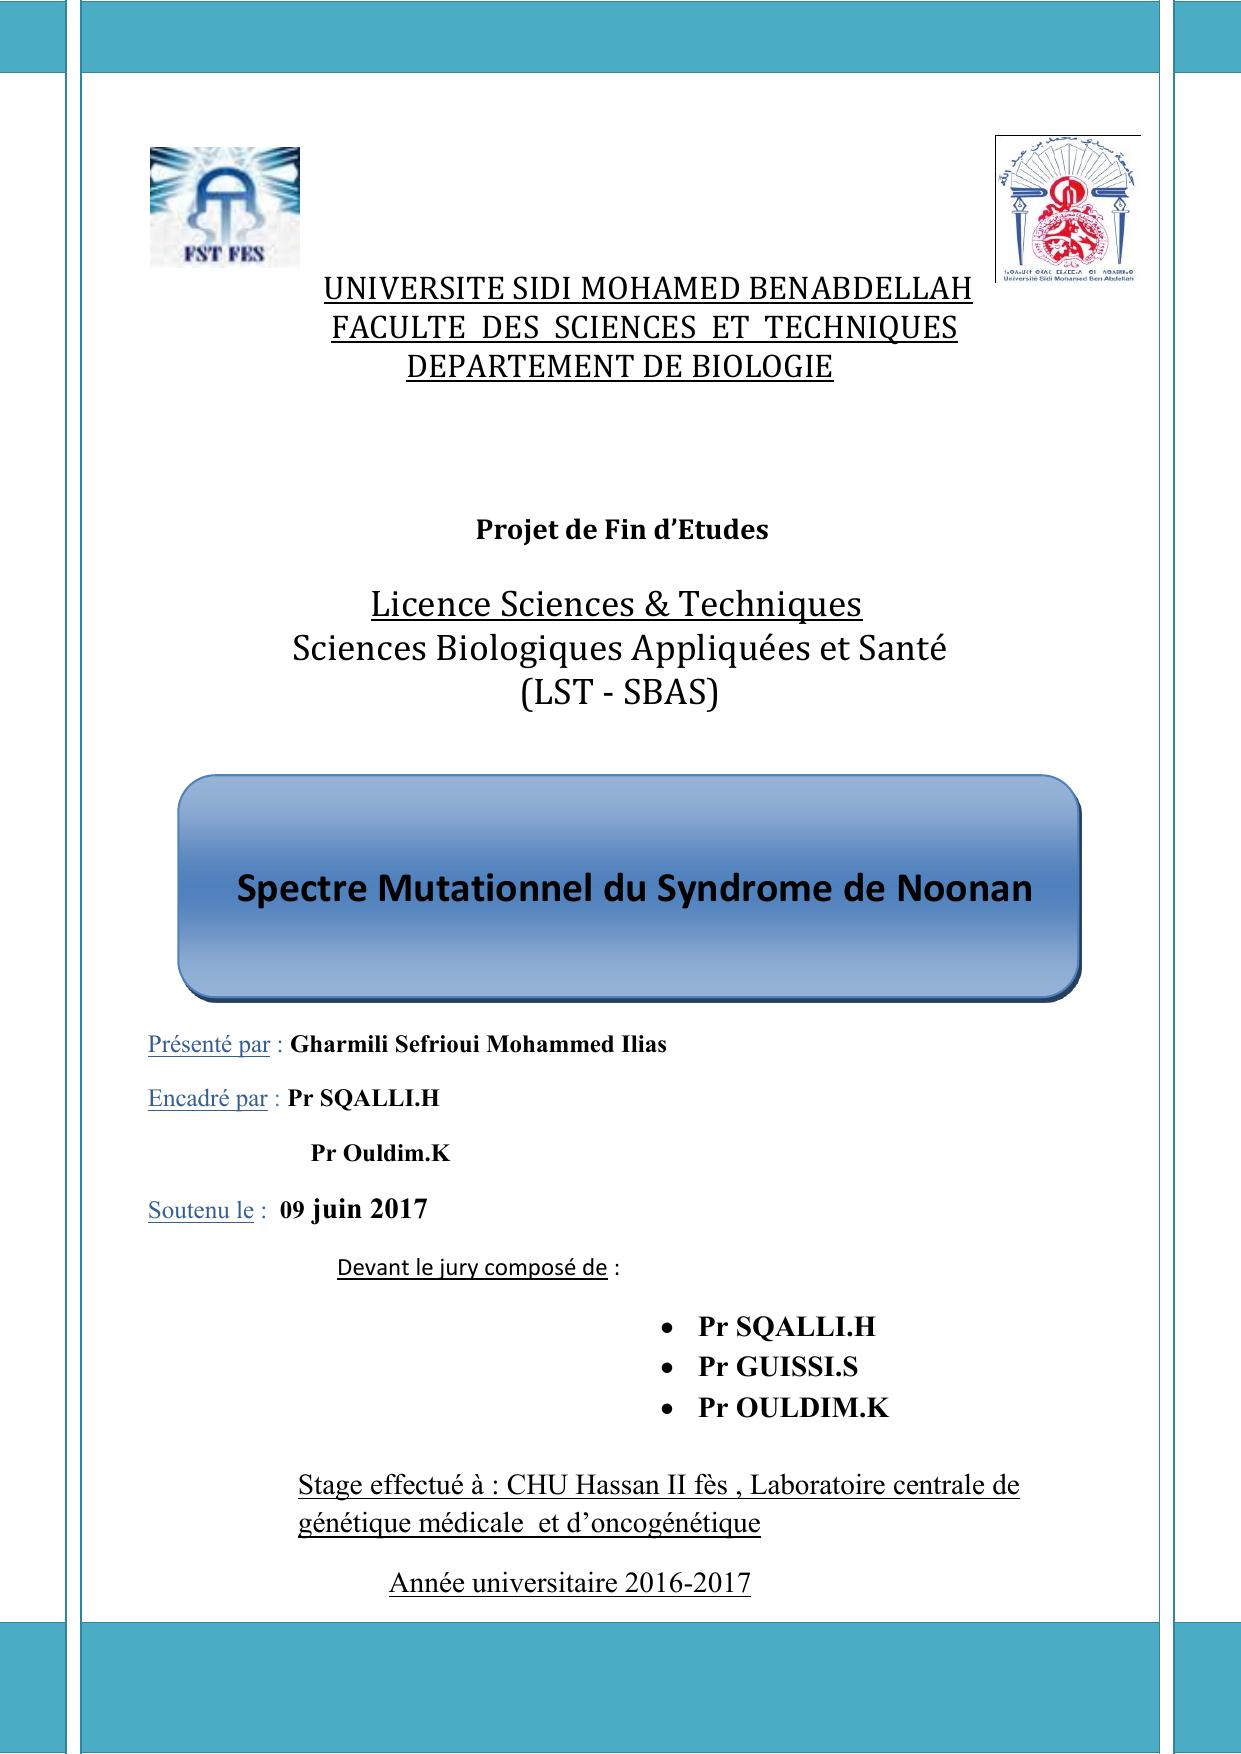 Spectre Mutationnel du Syndrome de Noonan